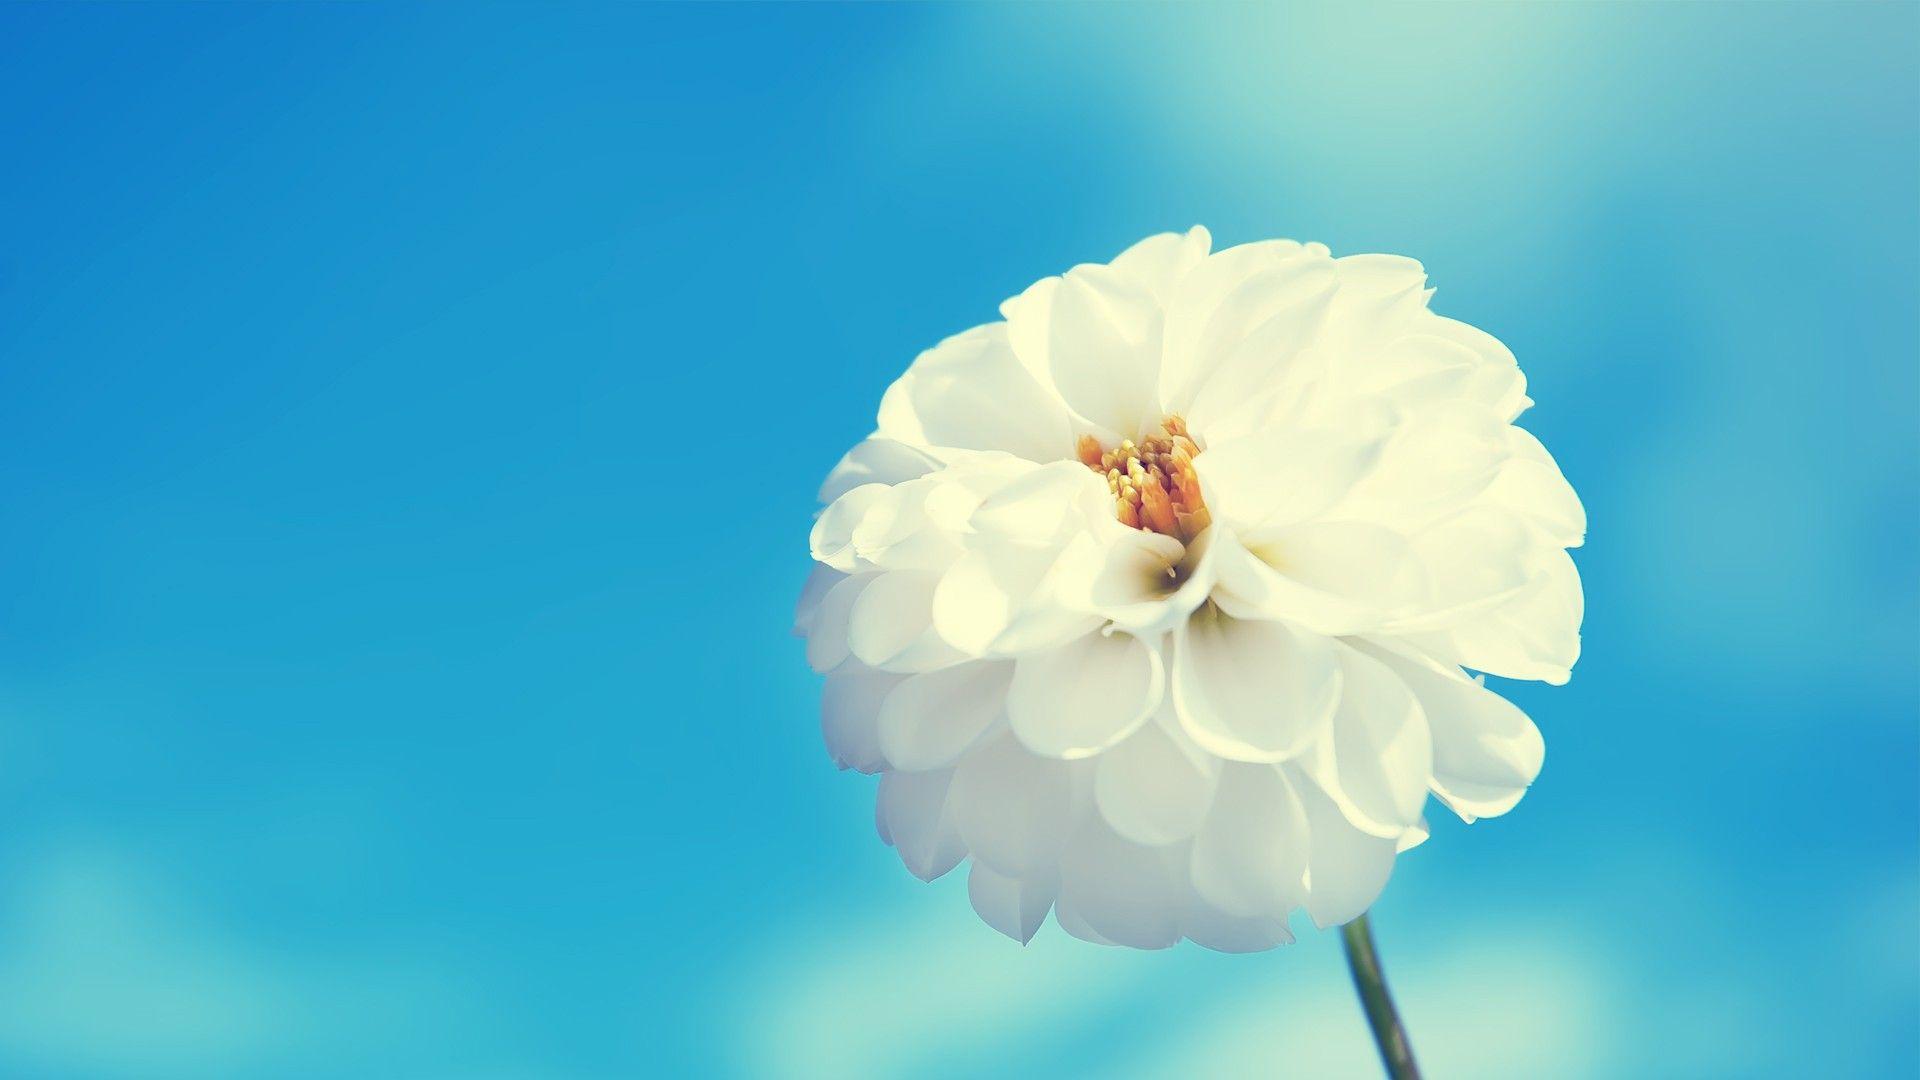 Hoa trắng, hình ảnh đẹp: Hoa trắng mang lại một vẻ đẹp tinh khiết và thanh lịch. Bức ảnh này là một minh chứng cho điều đó. Hãy đắm mình vào những bông hoa trắng tinh khôi, bạn sẽ cảm nhận được một sự bình yên và thư thái đầy tuyệt vời. Bức ảnh hoa trắng sẽ khiến bạn thích thú và cảm nhận nét đẹp độc đáo của chúng.